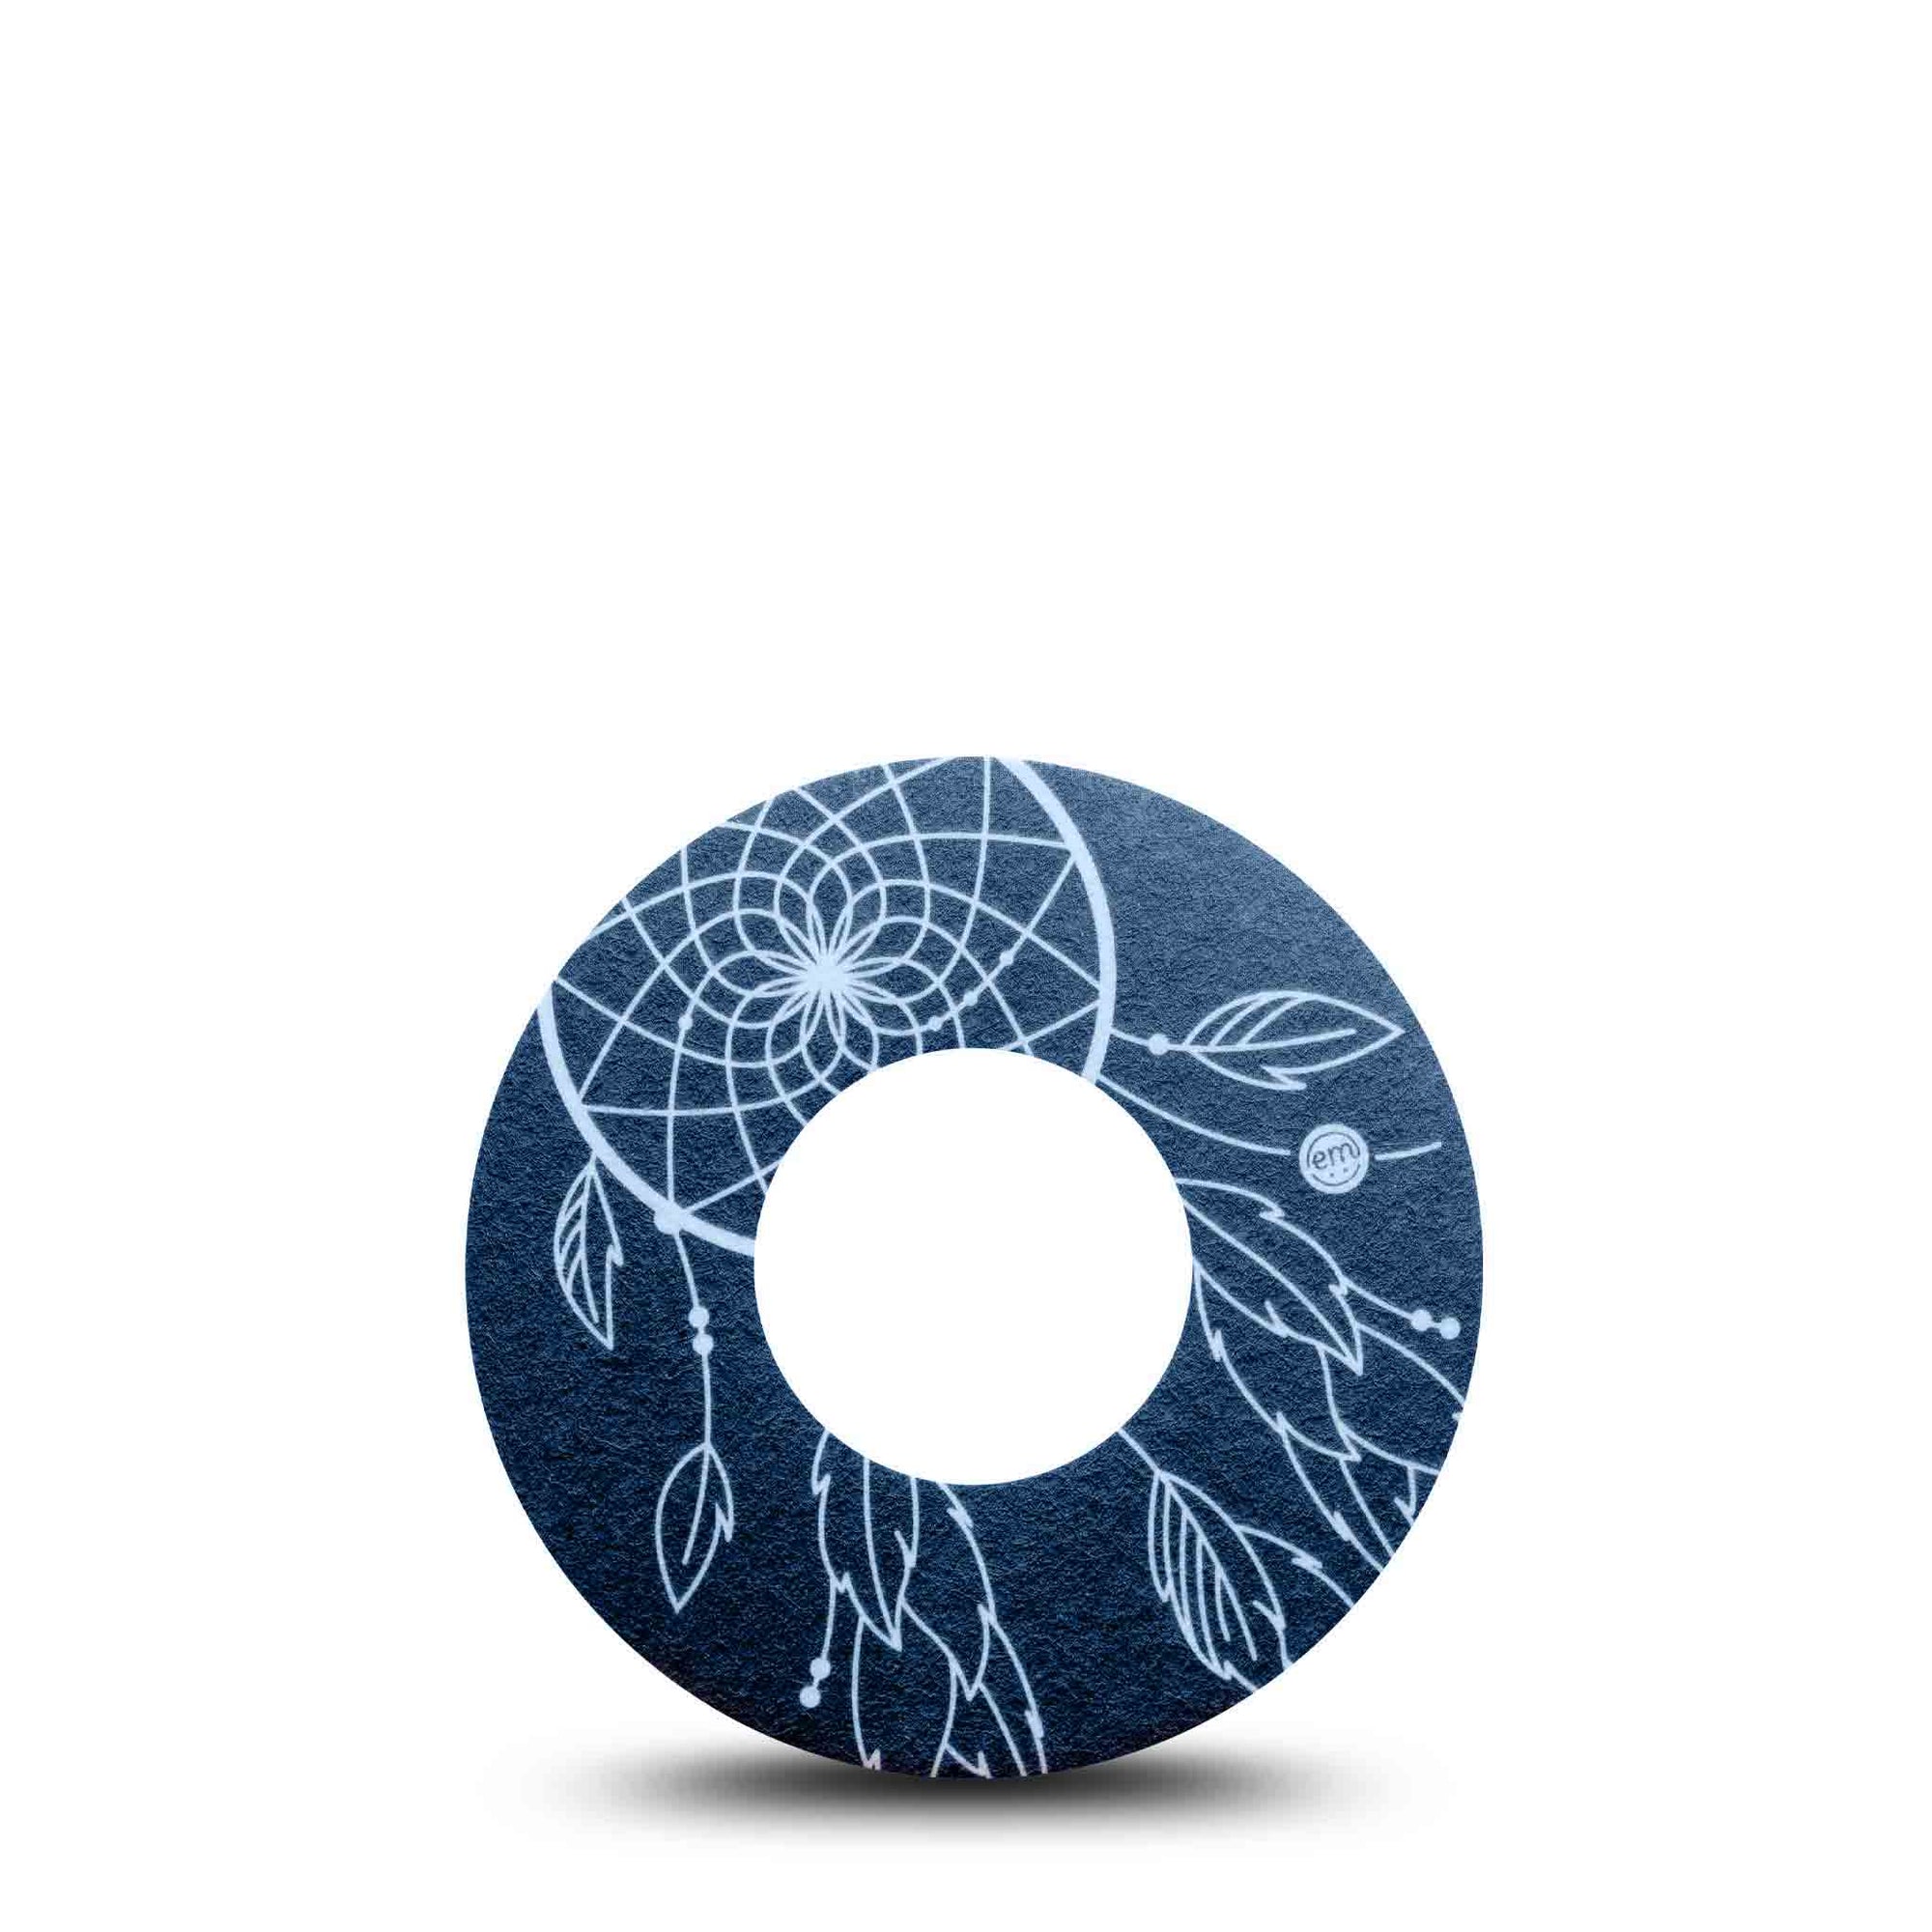 Blue Dreamcatcher Libre Tape, Abbott Lingo